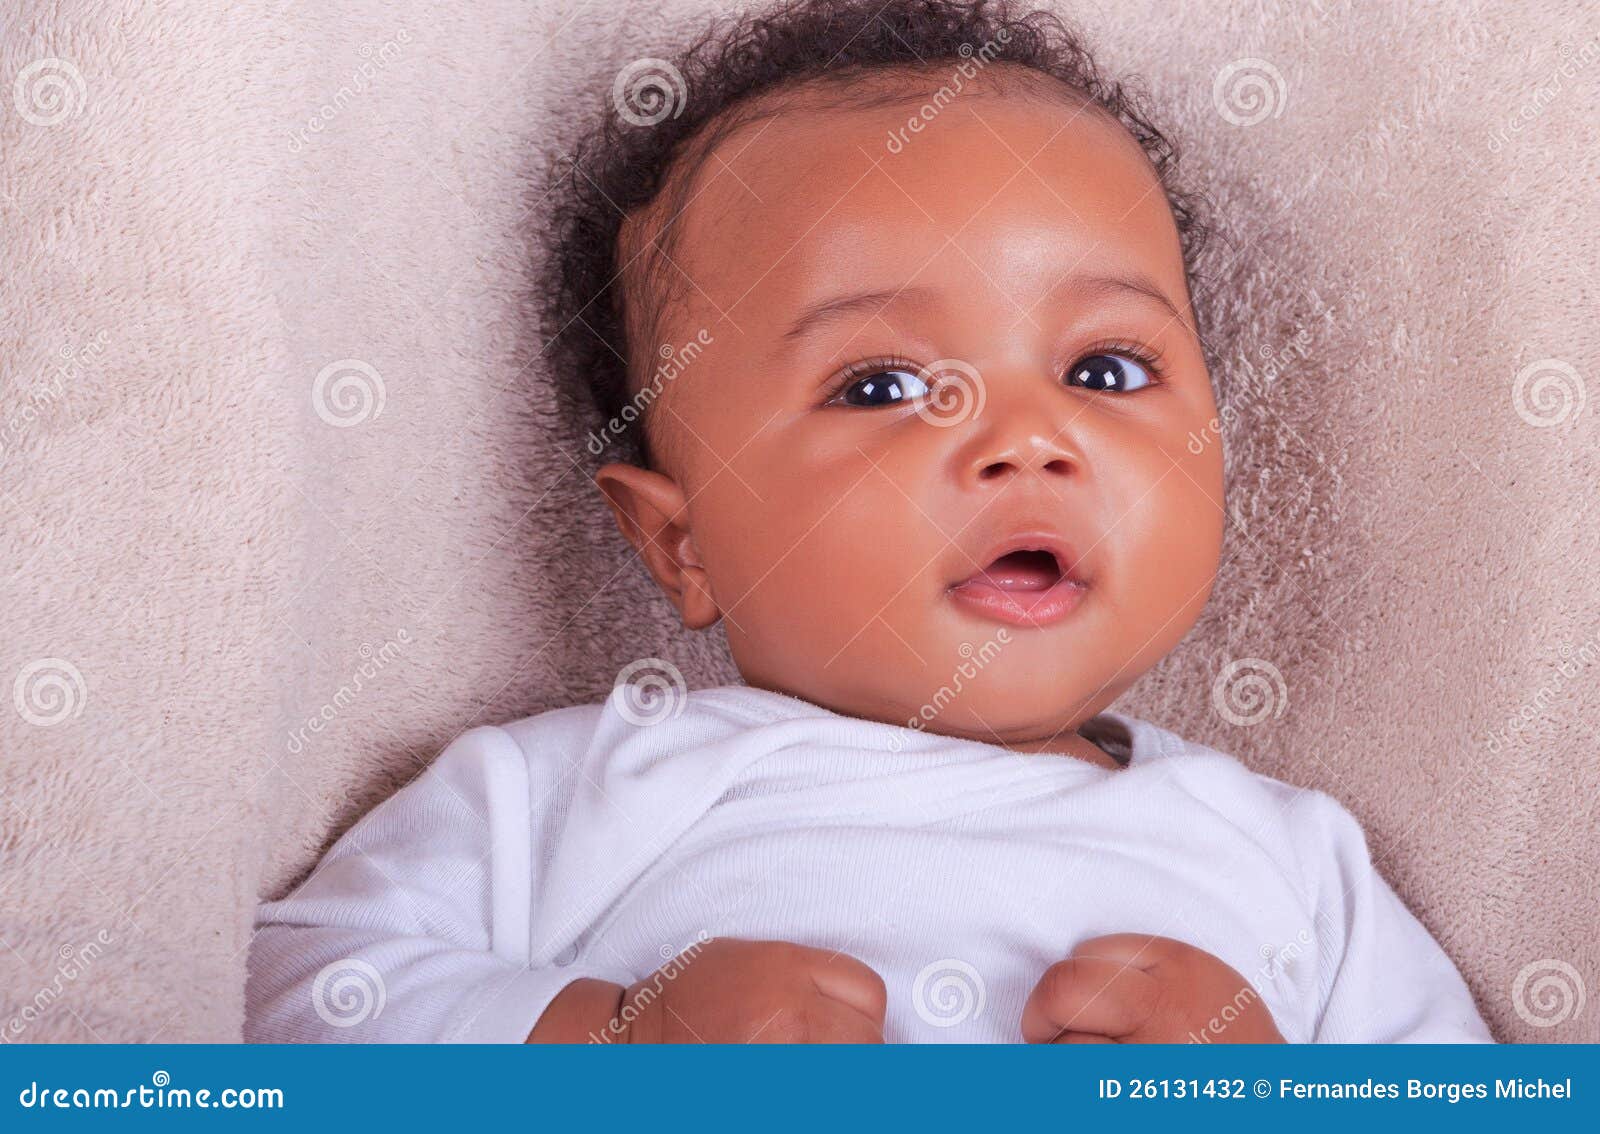 Black Newborn Baby Boy Pictures